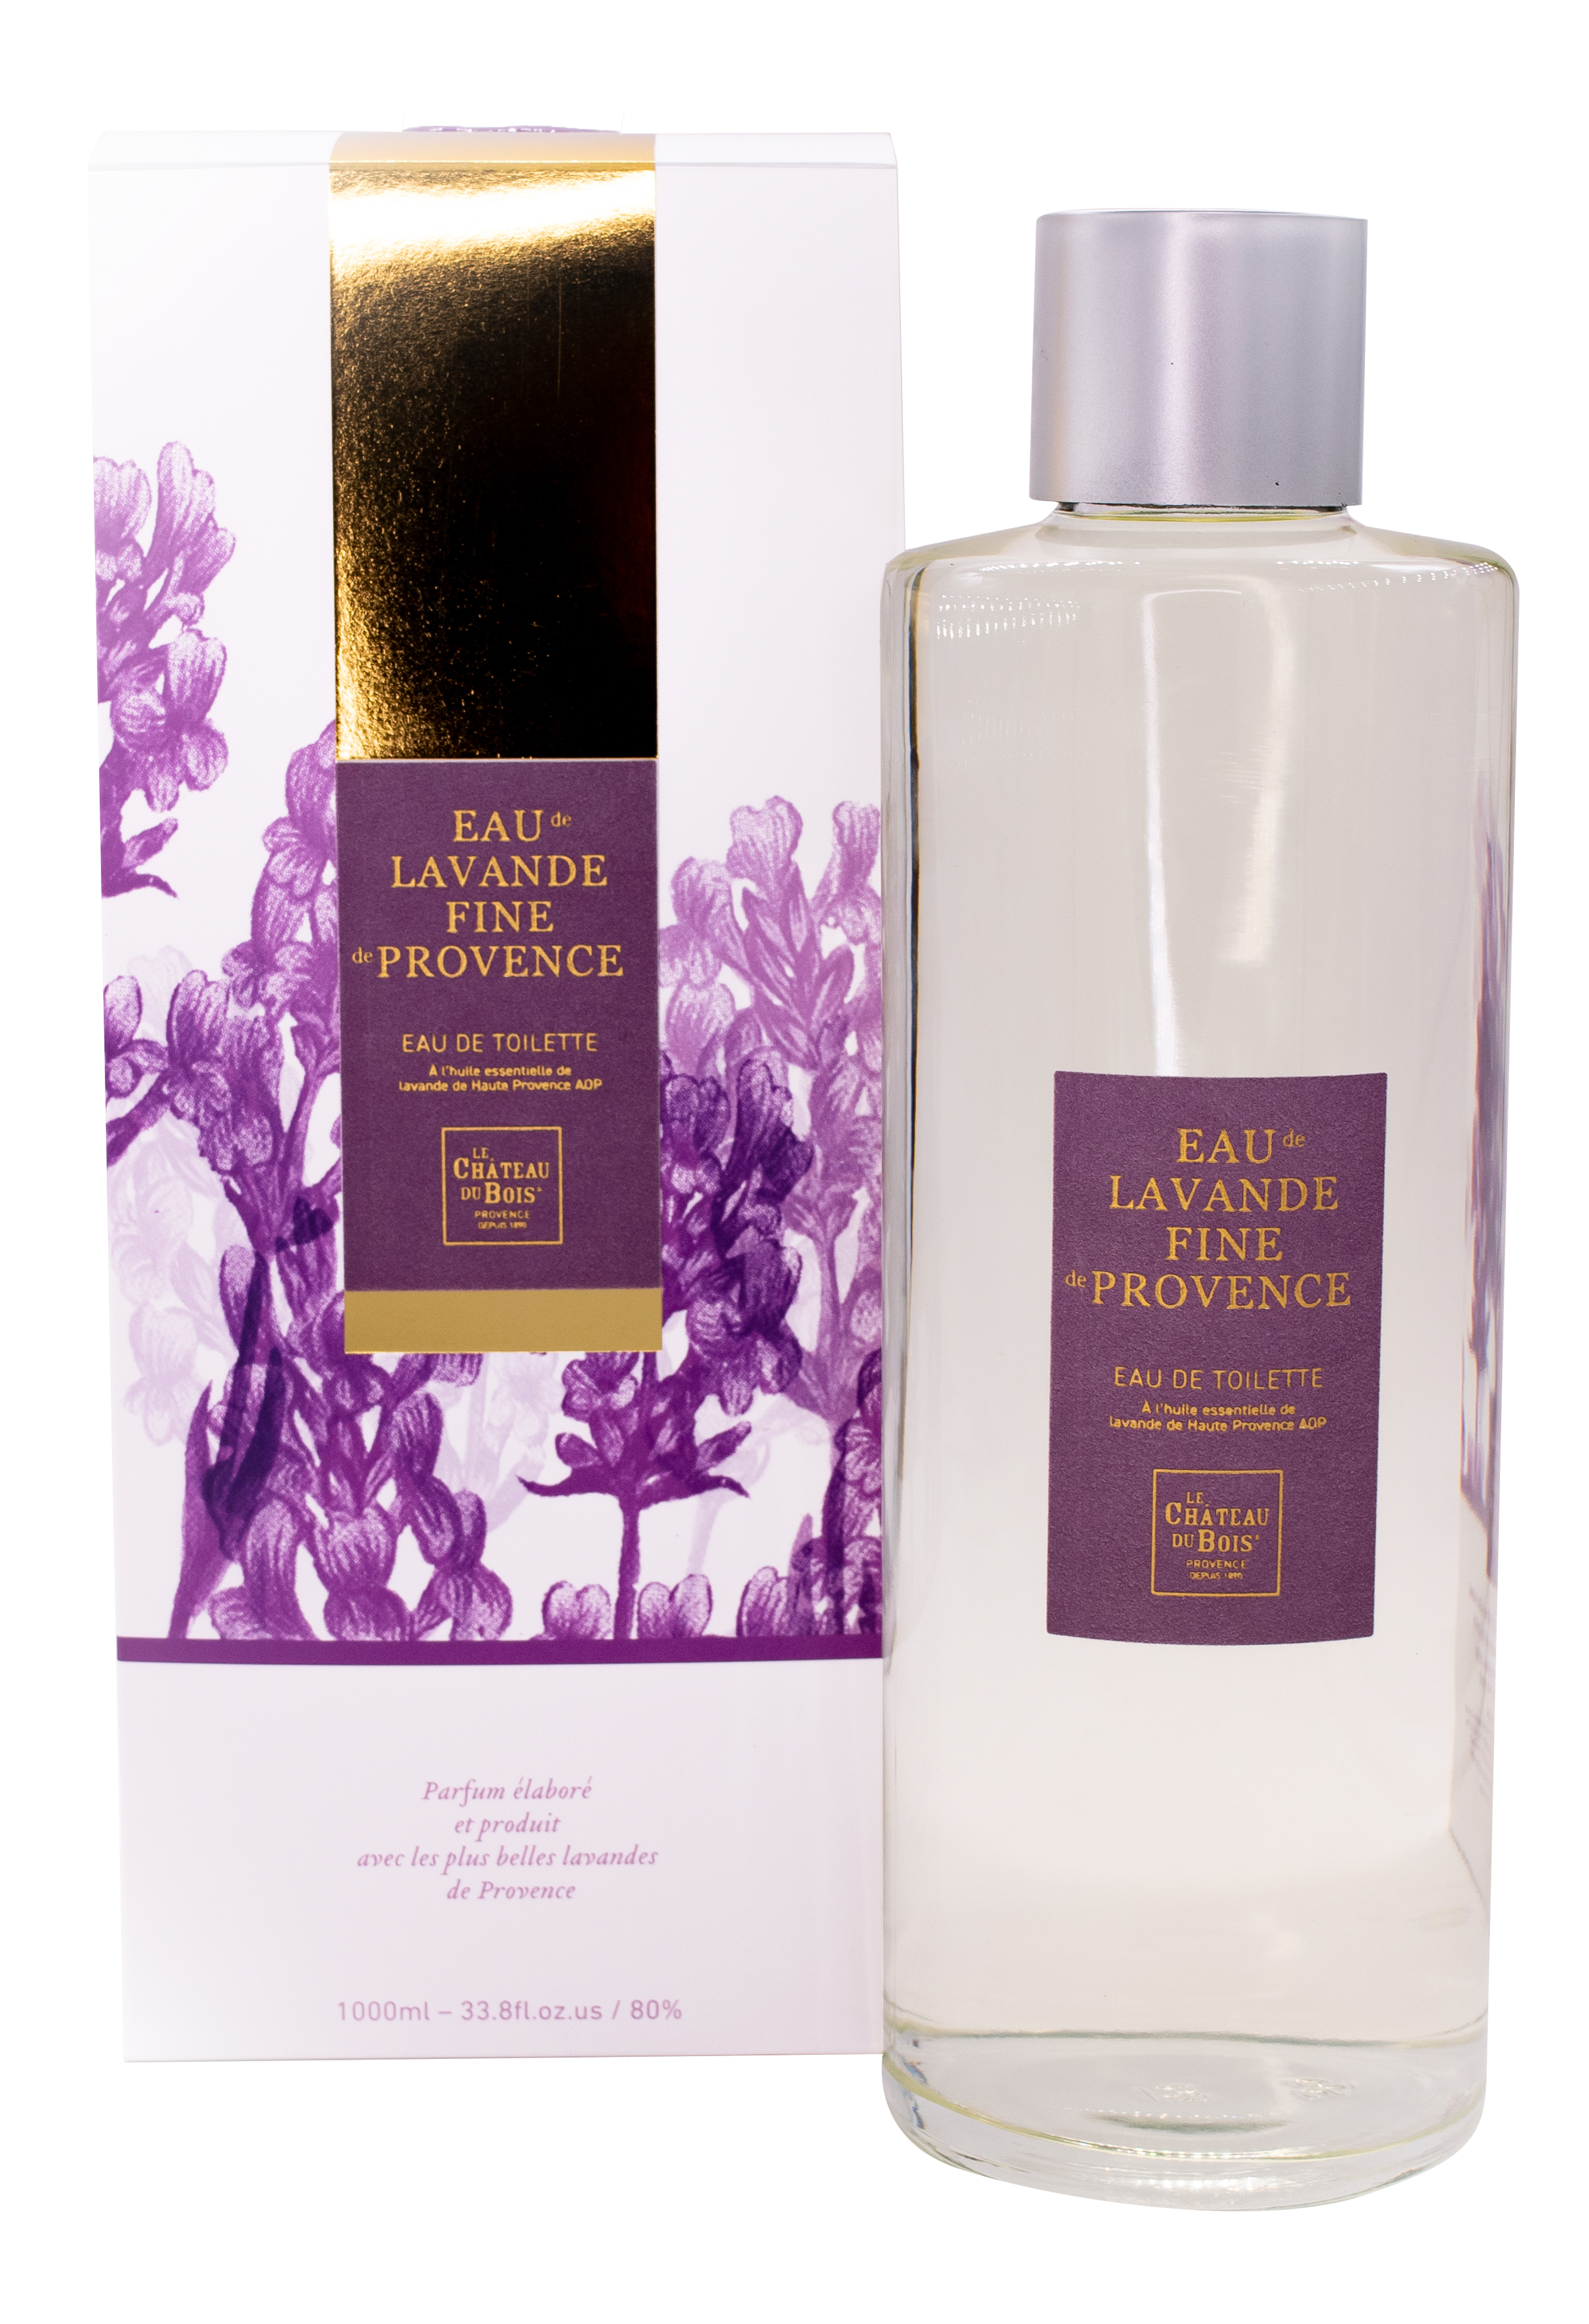 Eau de toilette with fine lavender from Provence